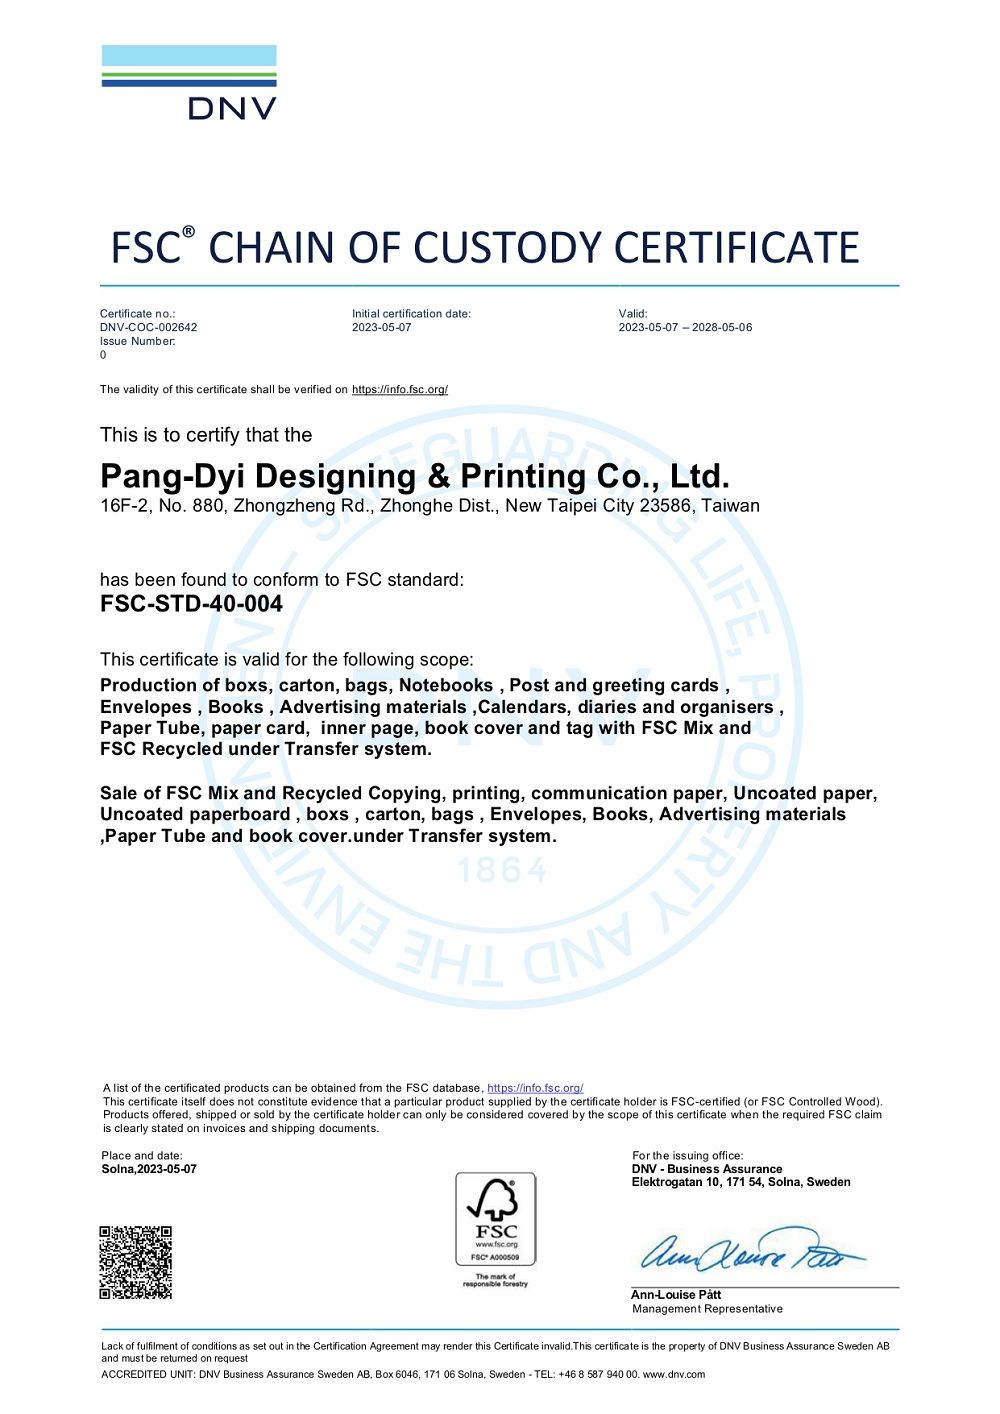 PUNYD-FSC Certificate